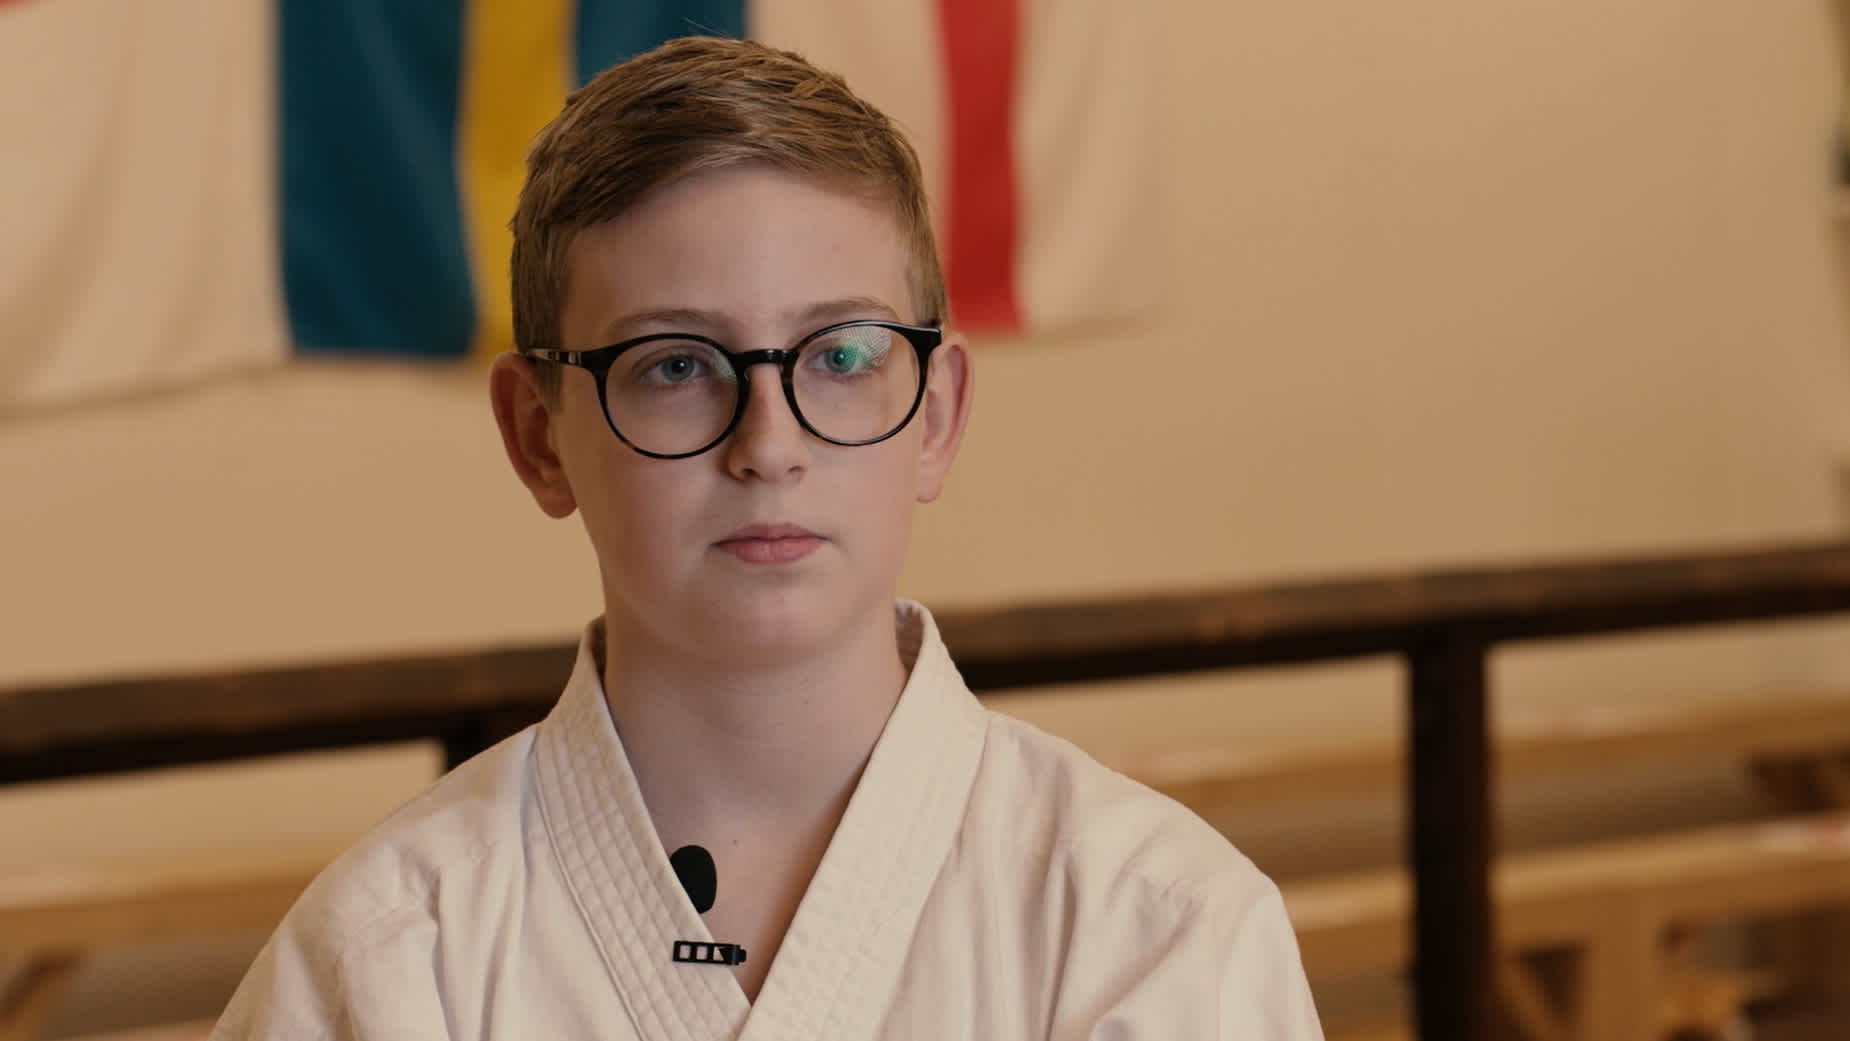 William intervjuas om vad karaten betyder för honom.